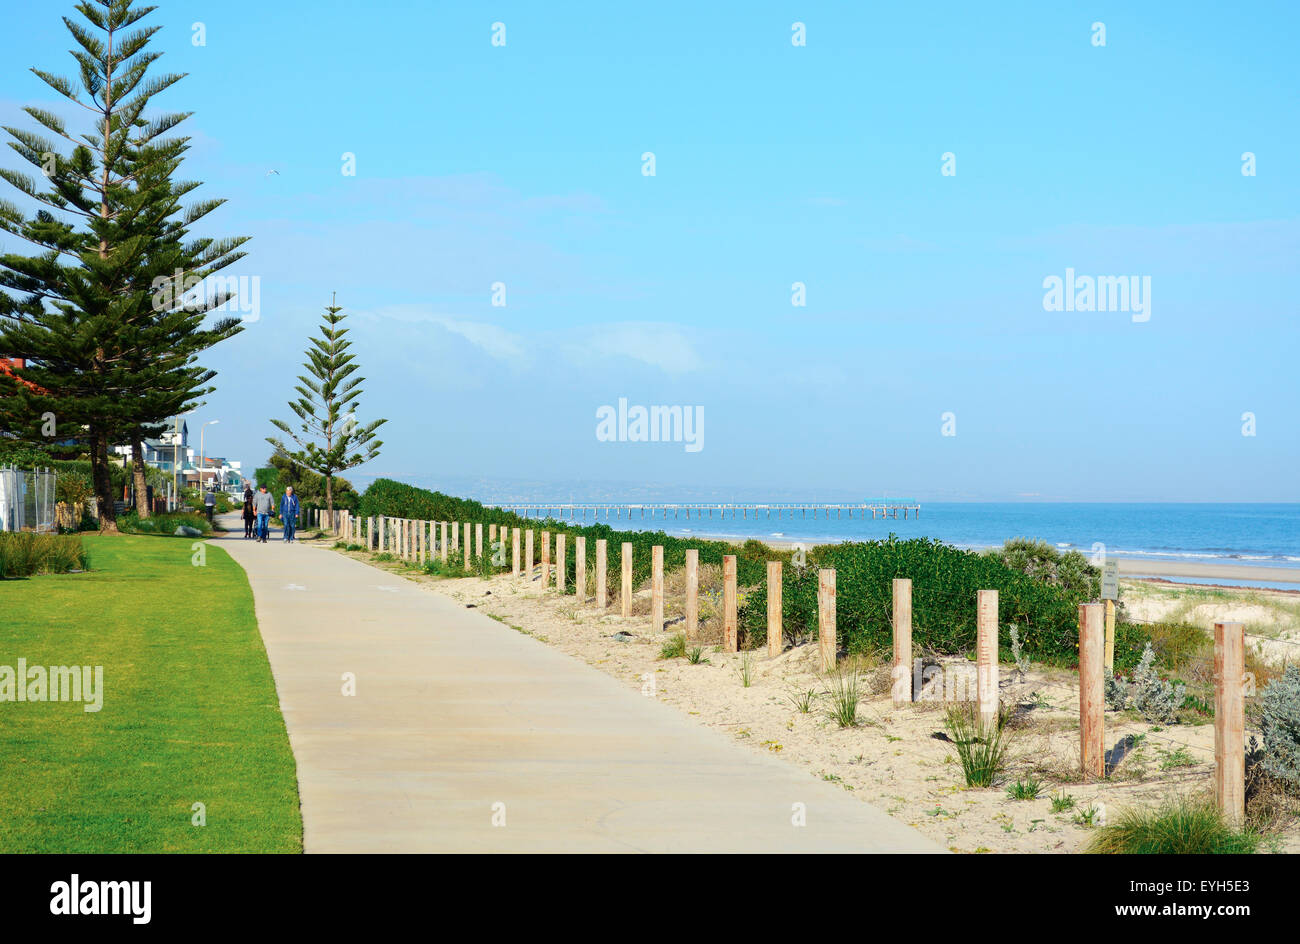 Bicicletta e passeggiata con vista sulla spiaggia e jetty pier in background, prese a Henley Beach, Australia del Sud. Foto Stock